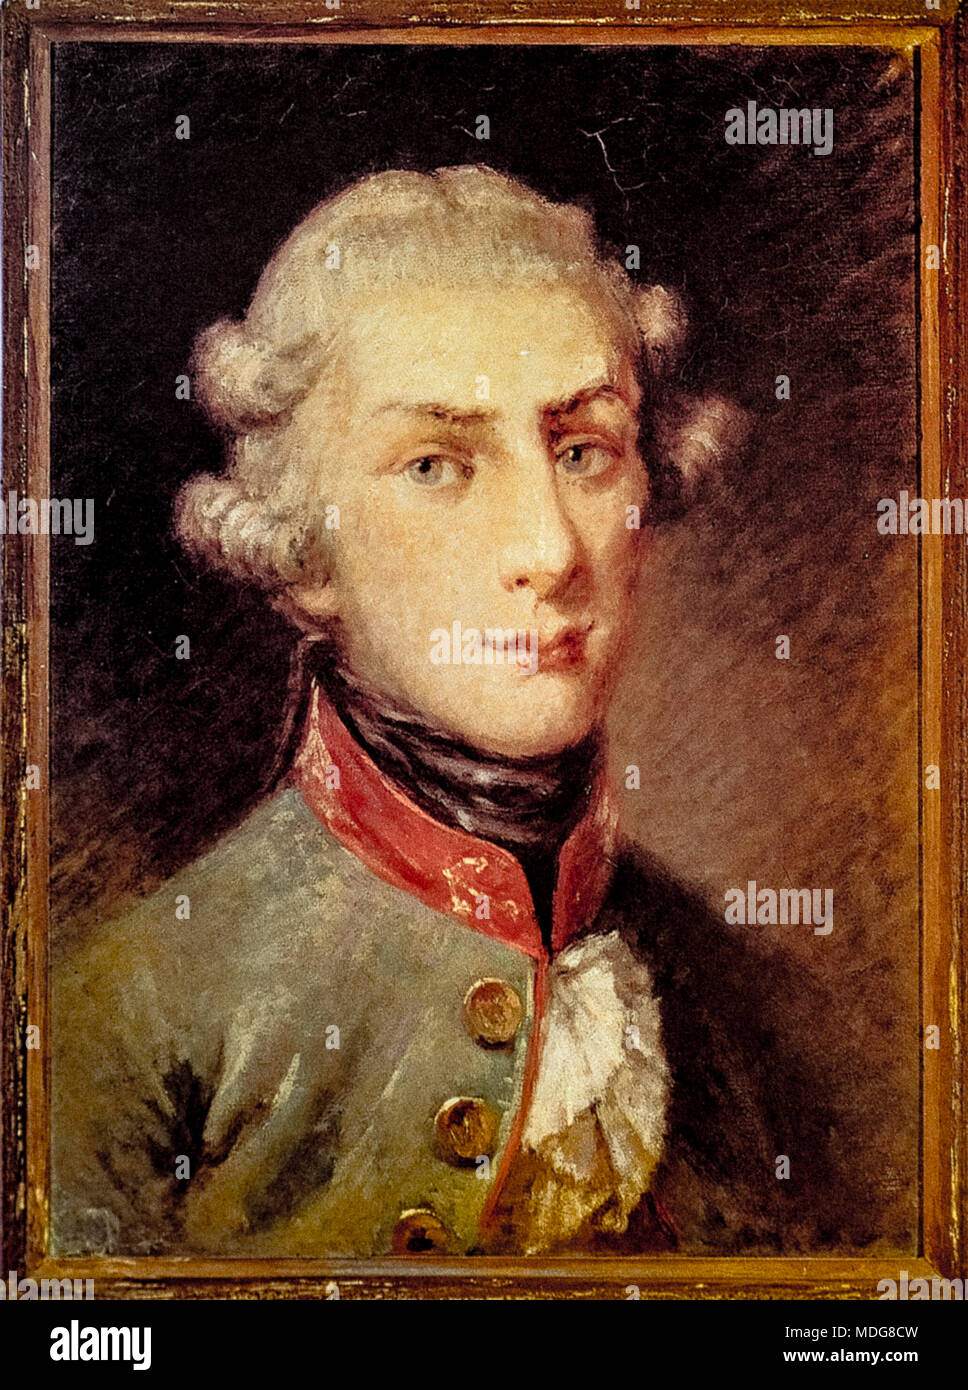 Giusso della Schiava - Portrait of Gennaro Serra di Cassano  (Portici, 30 settembre 1772 – Napoli, 20 agosto 1799) -Italian patriot of the Neapolitan Republic of 1799. Stock Photo